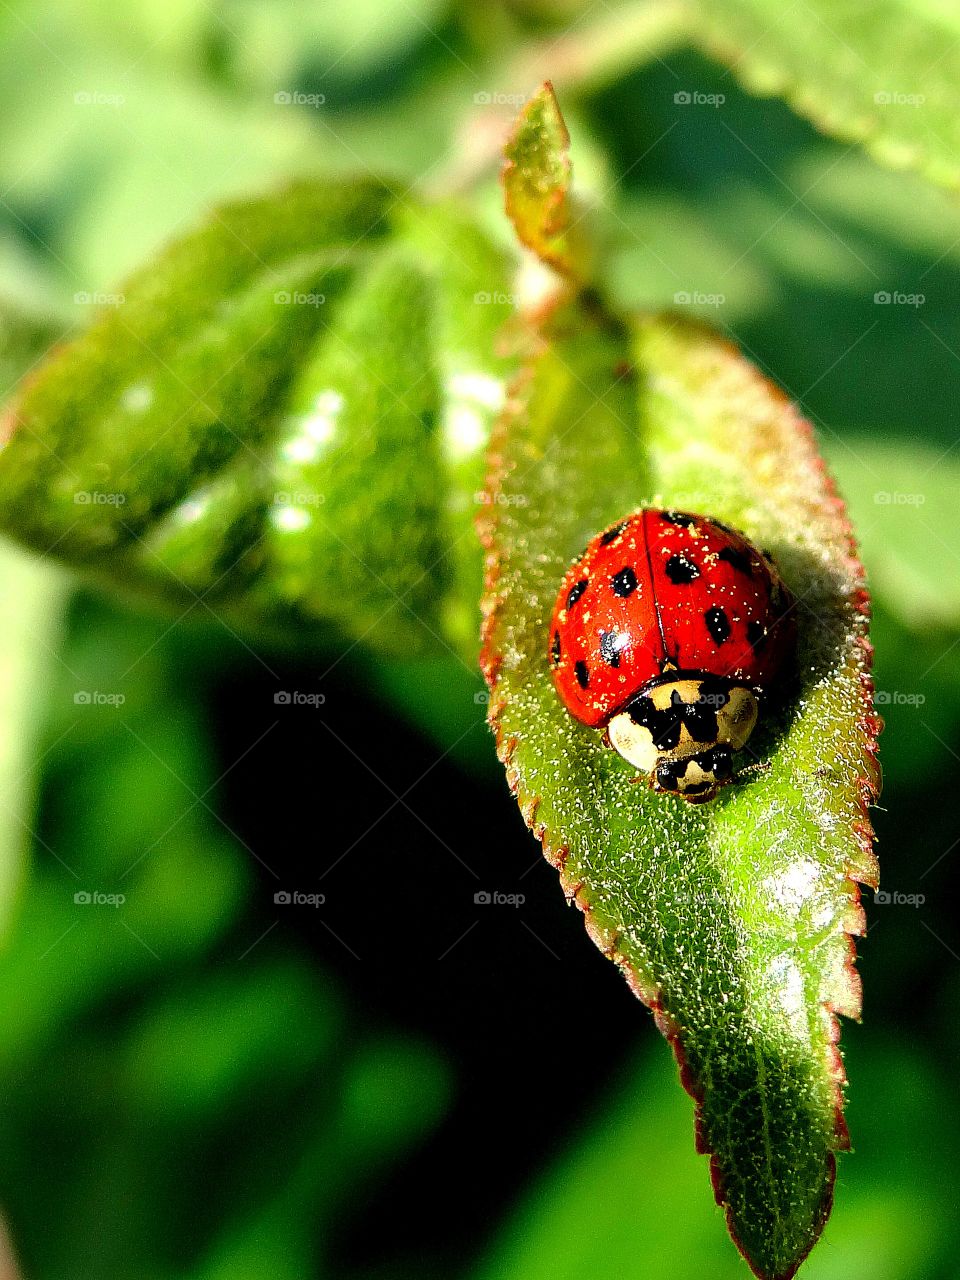 I spy a ladybug